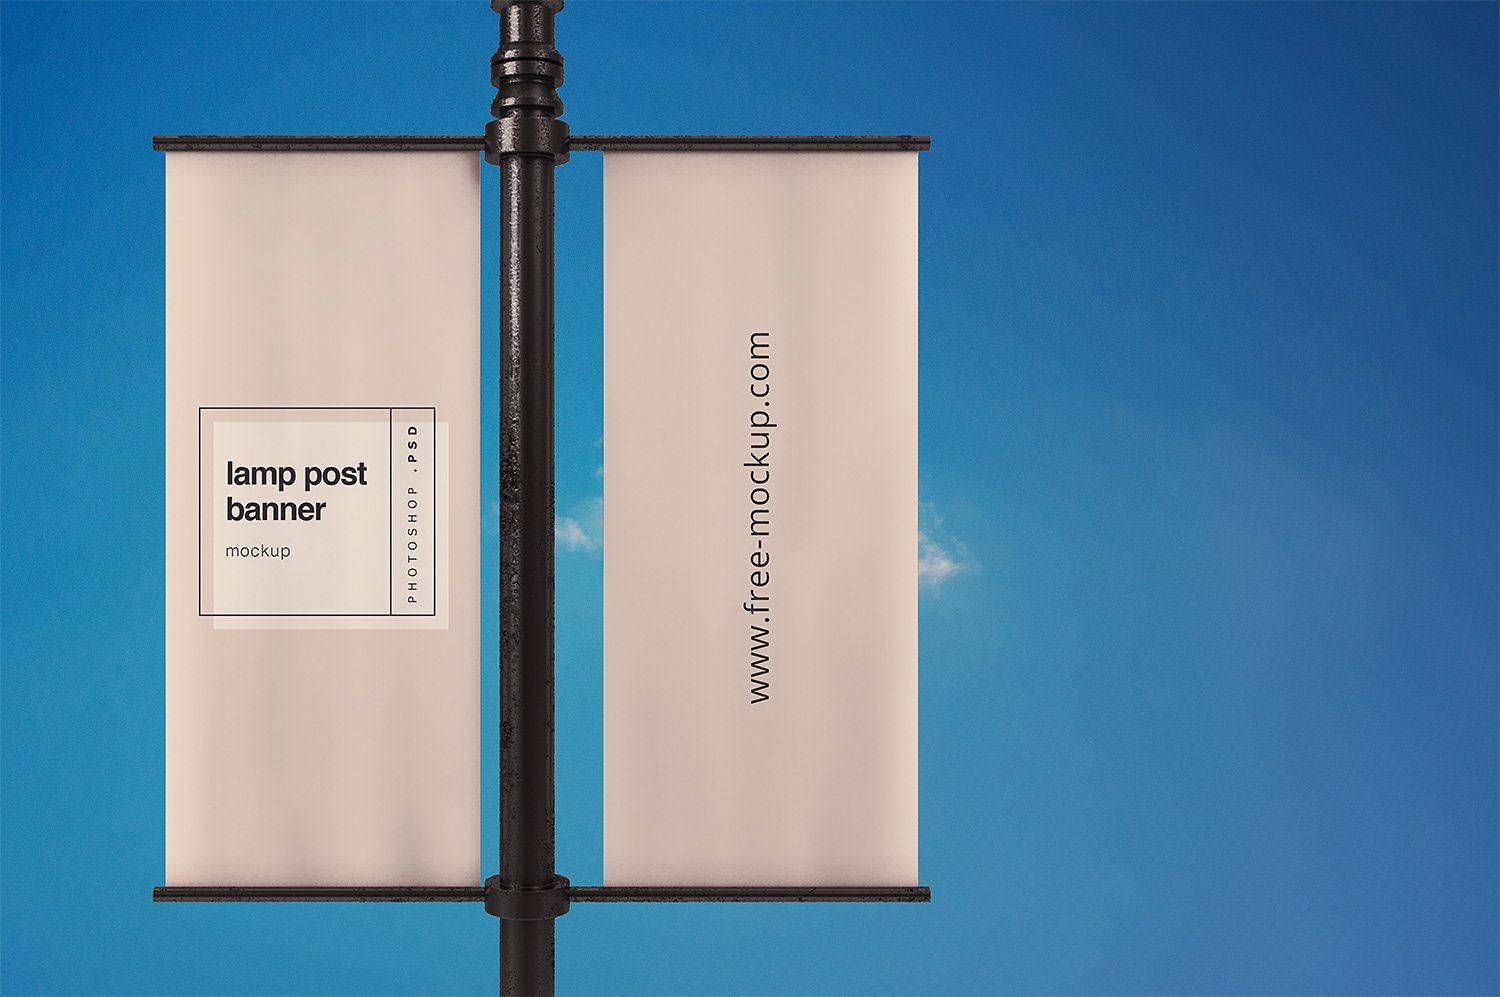 Download Lamp Post Banner Mockup Free Mockup PSD Mockup Templates